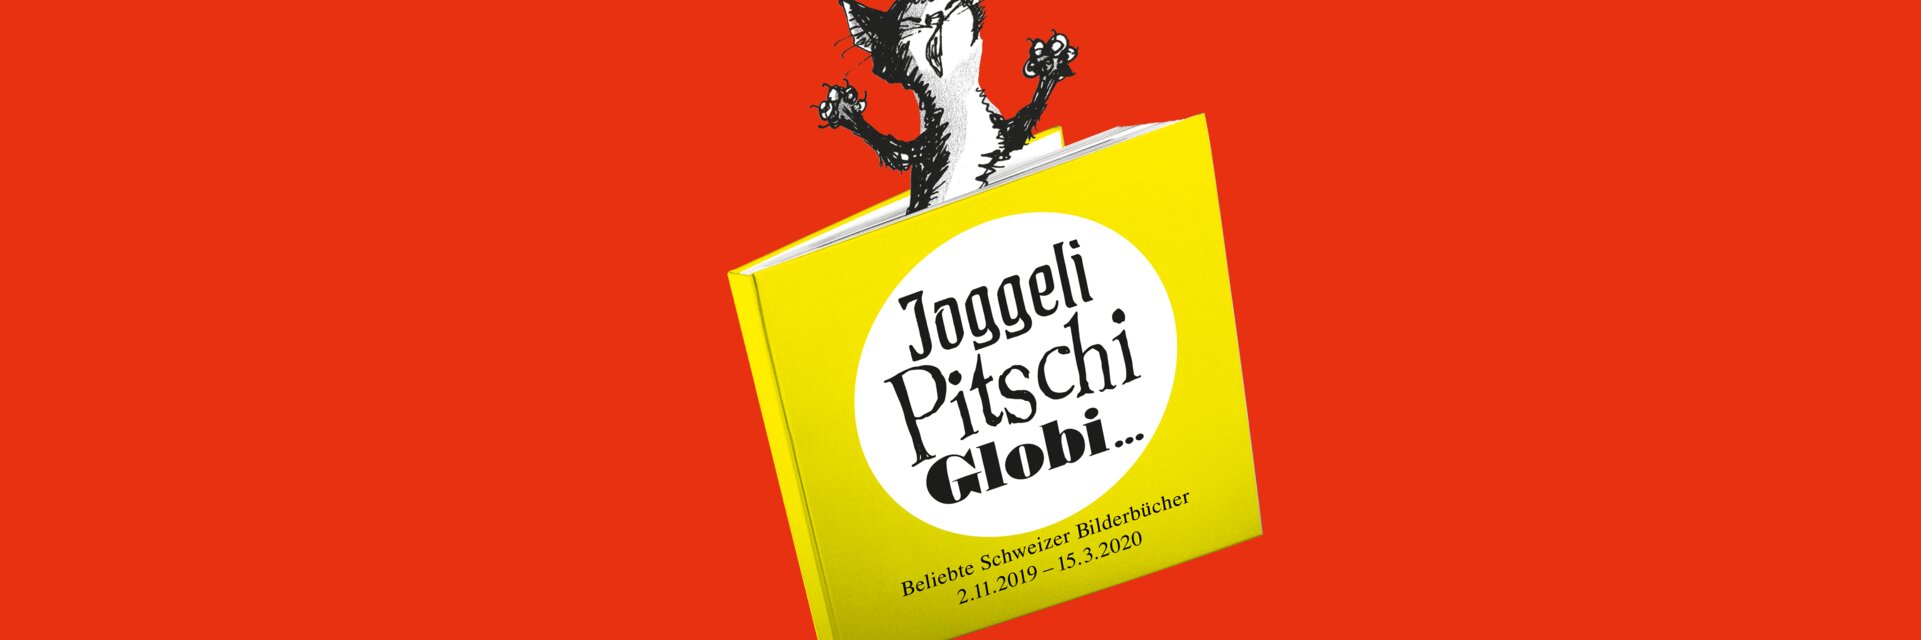 Keyvisual der Ausstellung "Joggeli, Pitschi, Globi… beliebte Schweizer Kinderbücher" es zeigt eine eingeklemmte Katze in einem Buch in gezeichneter Form